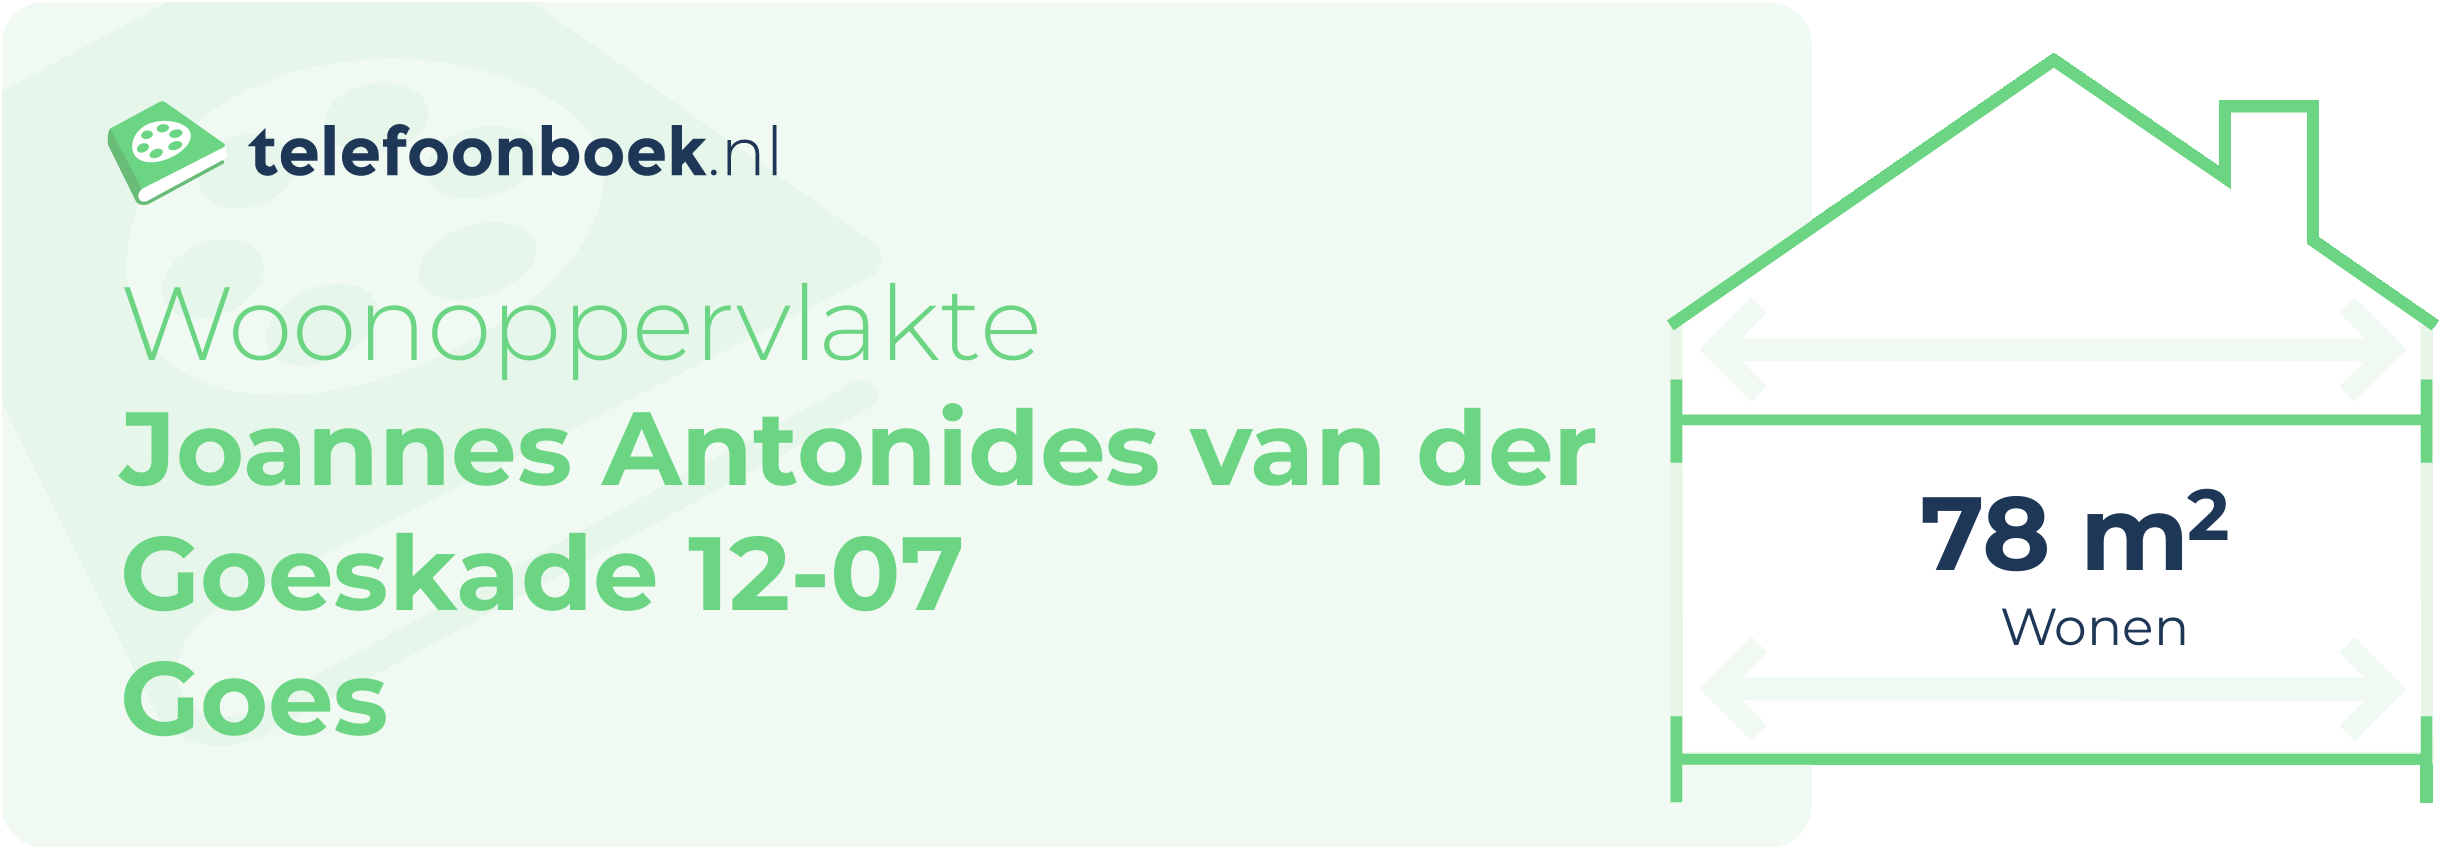 Woonoppervlakte Joannes Antonides Van Der Goeskade 12-07 Goes